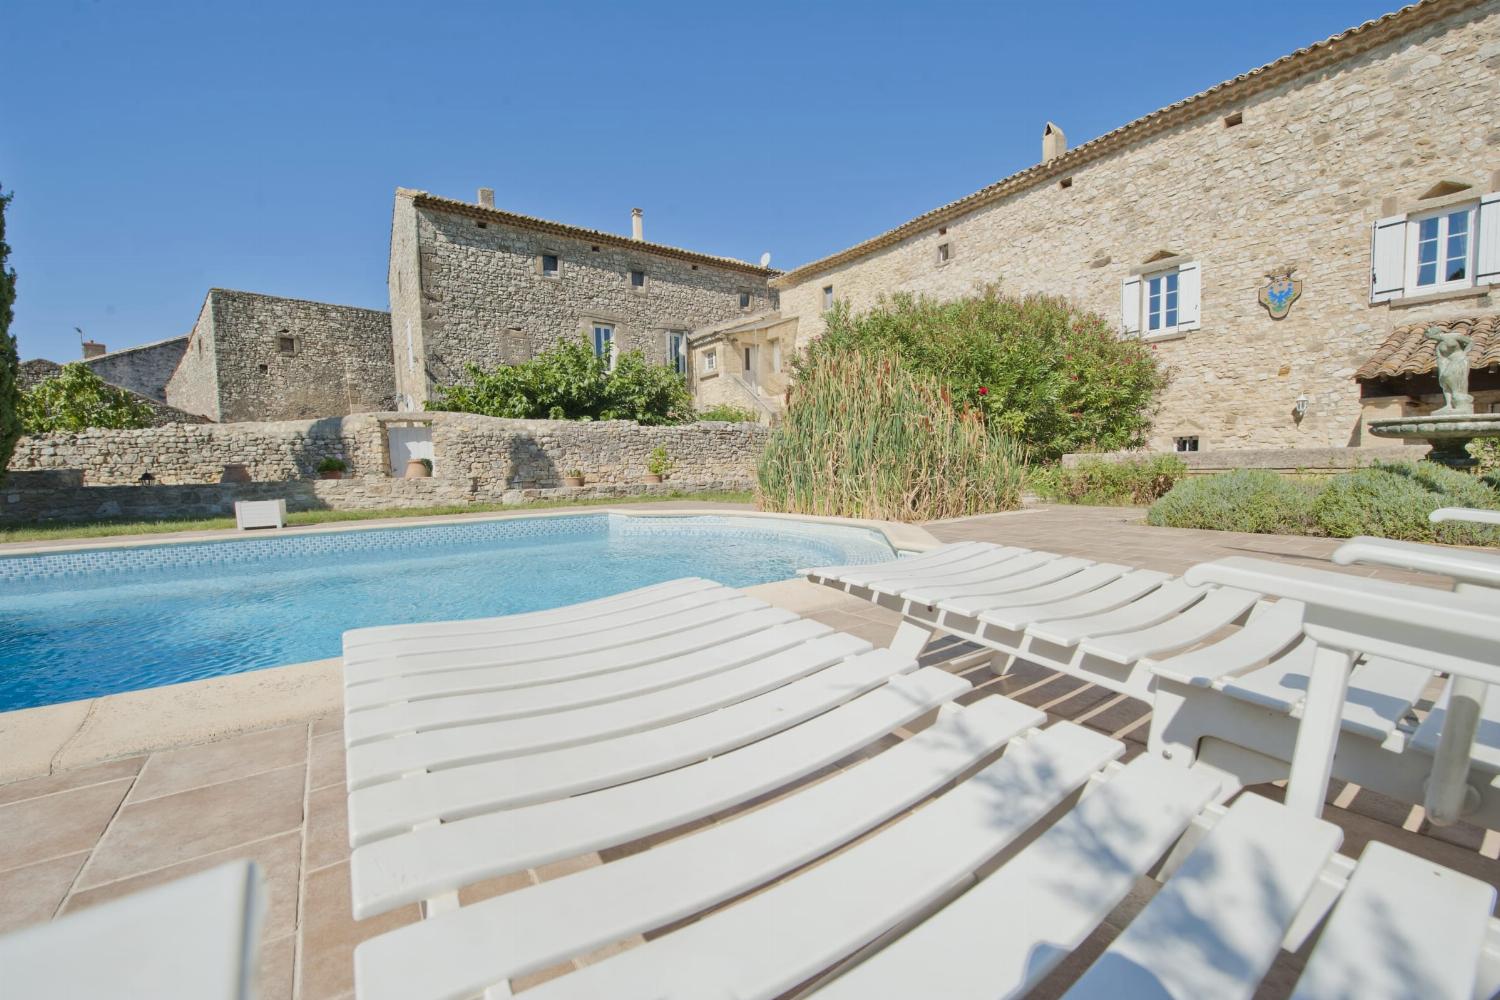 Maison de vacances dans le sud de la France avec piscine privée